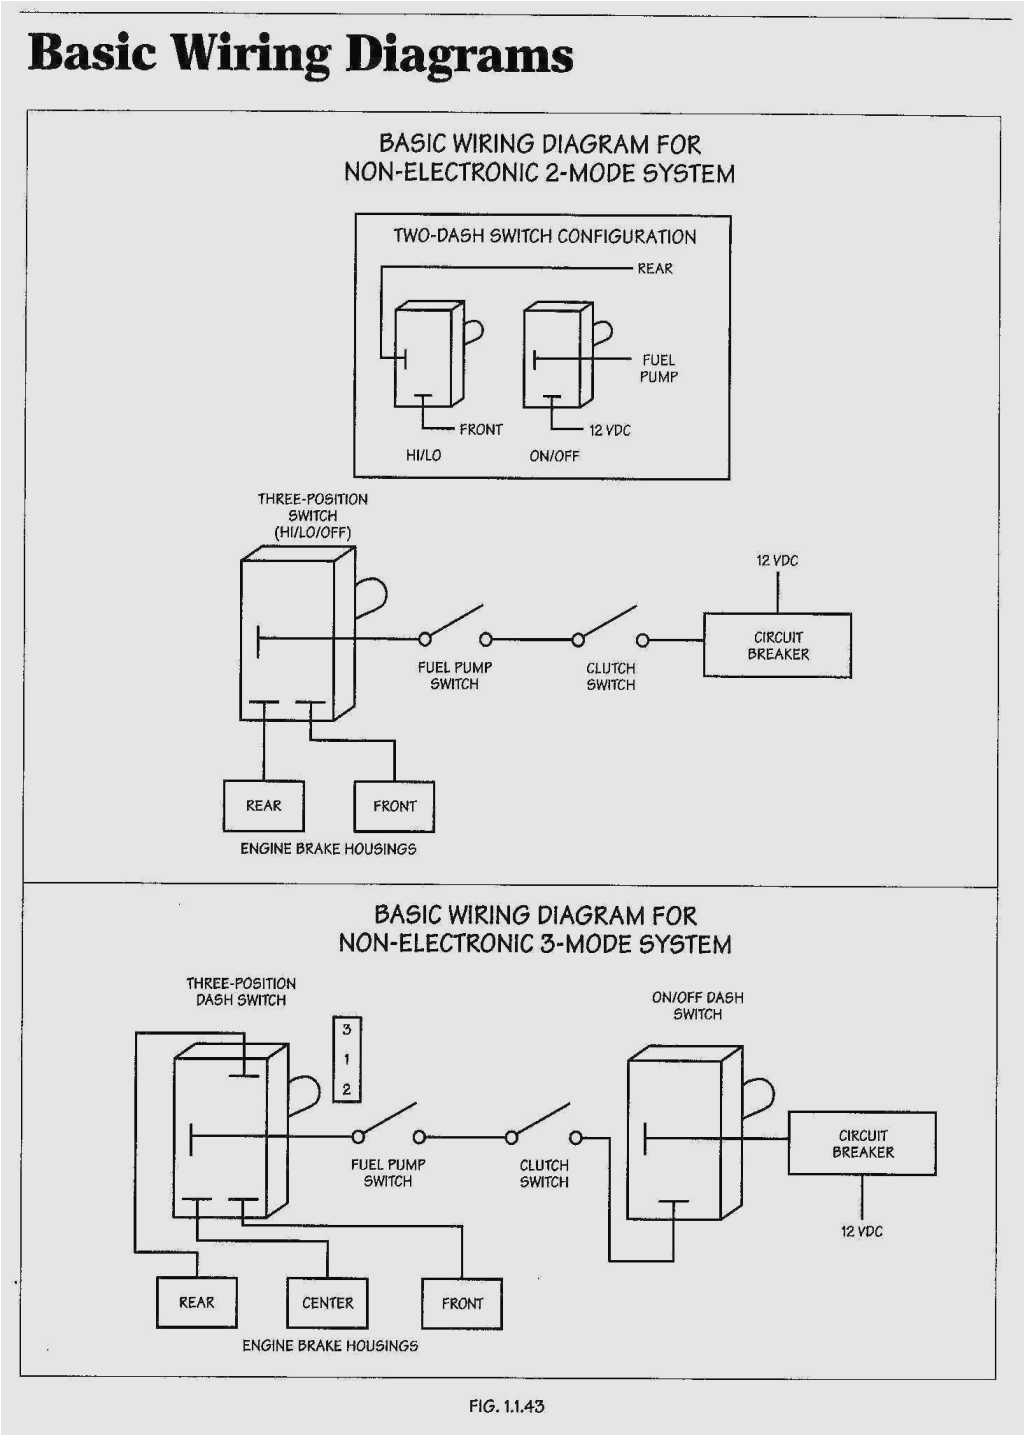 ug412rmw250p wiring diagram wiring schematic diagram 93 ug412rmw250p wiring diagram